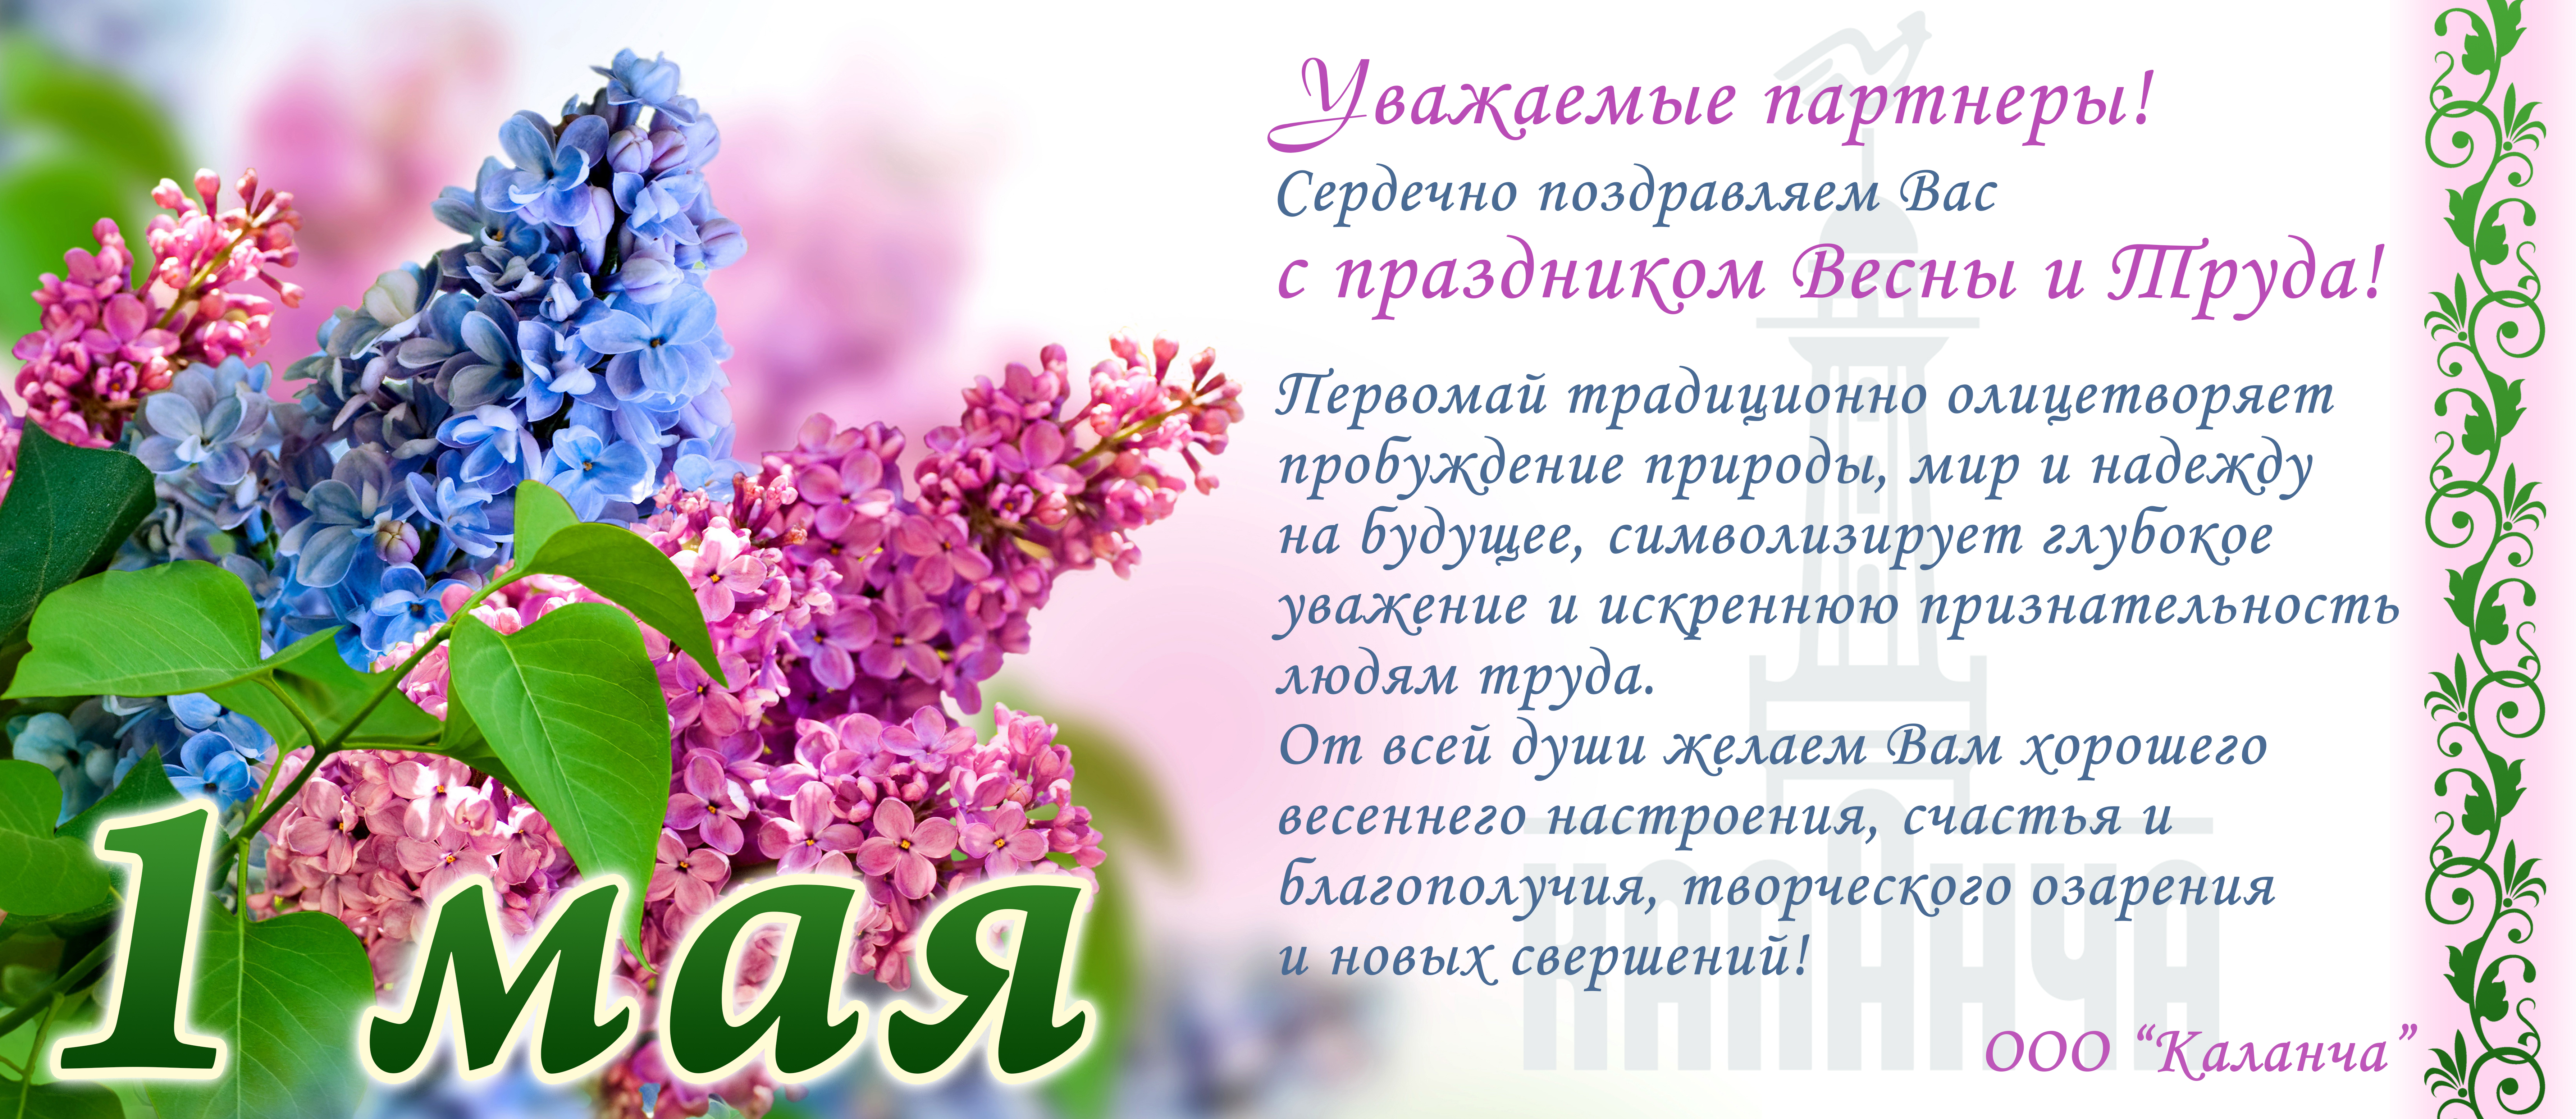 От всей души поздравляем вас с Первомаем - праздником весны и труда!